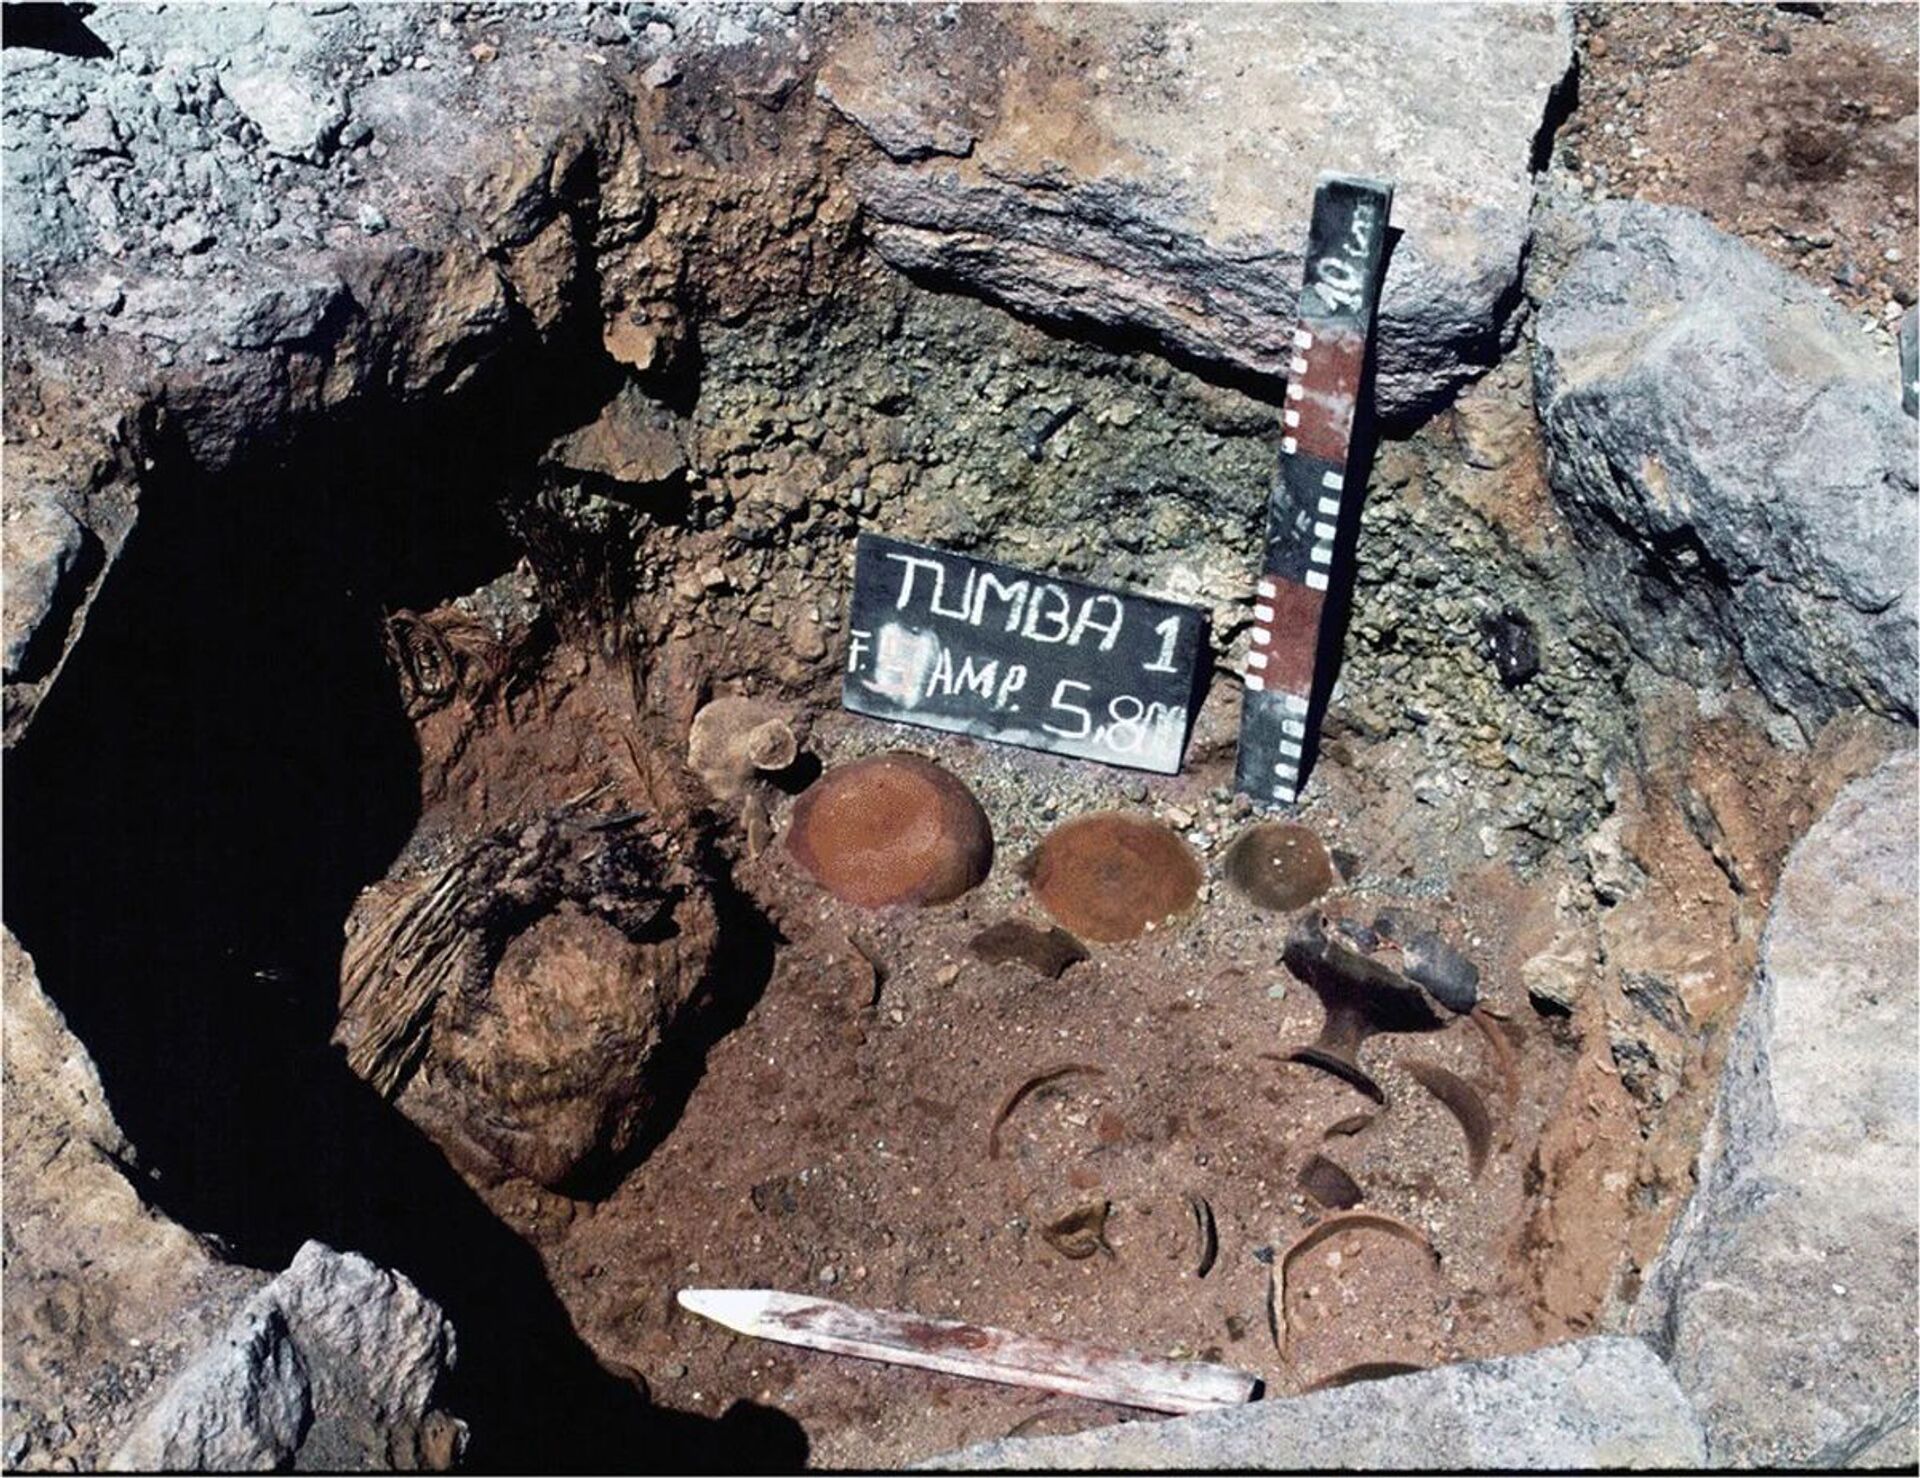 Segredos de sacrifícios humanos realizados pelos incas há mais de 500 anos são revelados (FOTOS) - Sputnik Brasil, 1920, 18.05.2021